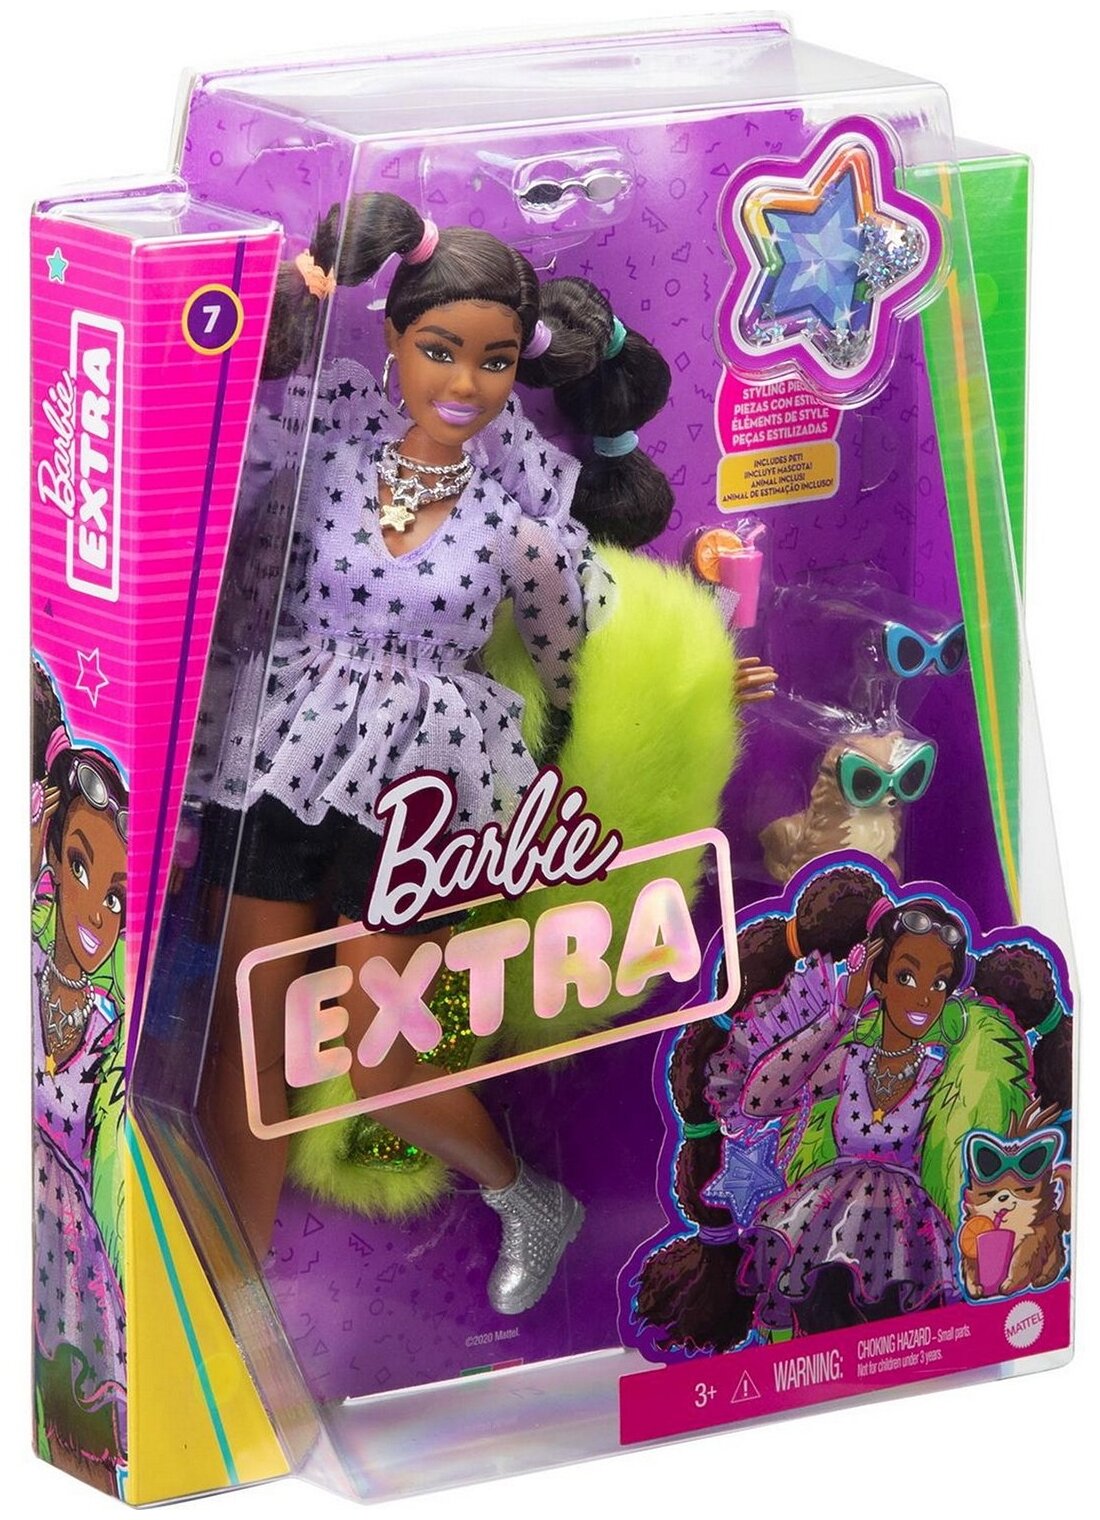 Barbie Кукла Экстра с переплетенными резинками хвостиками - фото №6